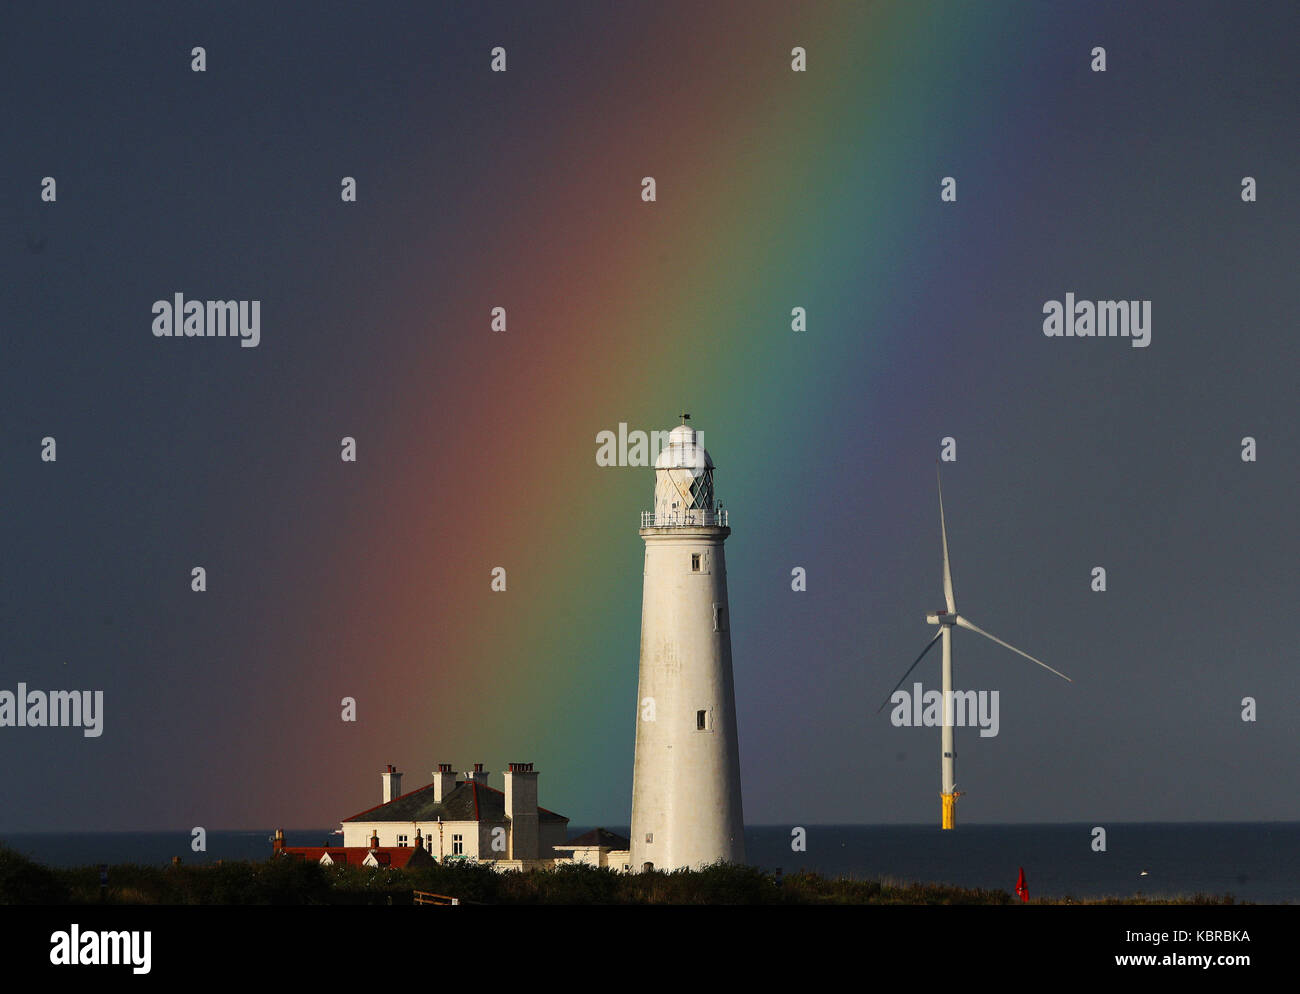 Ein Regenbogen über der St Mary's Leuchtturm in der Nähe von Whitley Bay in Tyne und Wear, da mehr ungeklärten Bedingungen für dieses Wochenende wahrscheinlich Aussehen und dem Beginn der nächsten Woche. Stockfoto